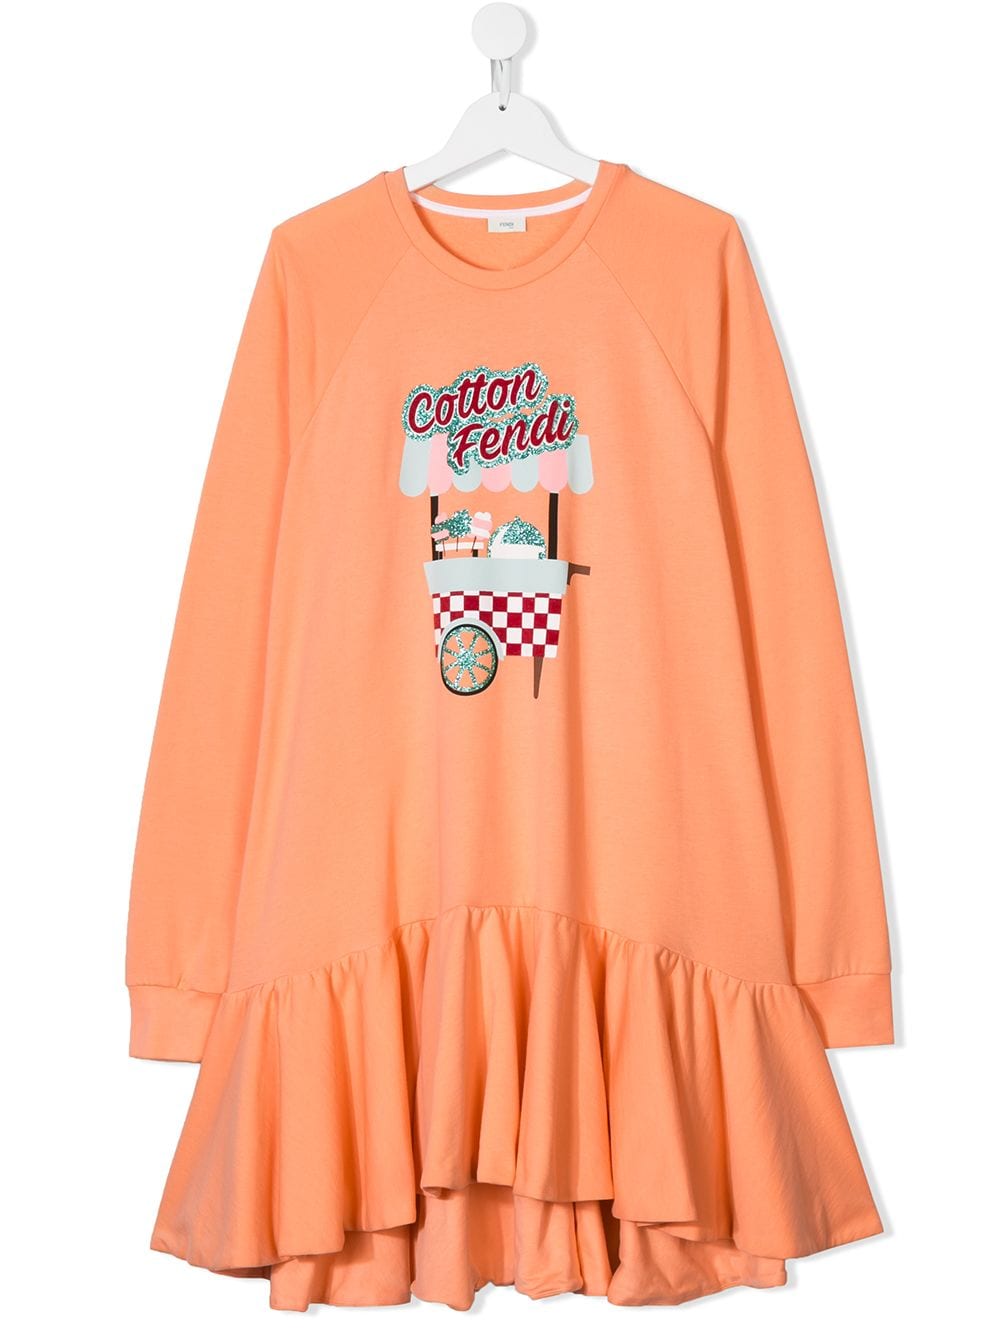 Fendi Kids' Cotton Candy Sweatshirt Dress In 粉色